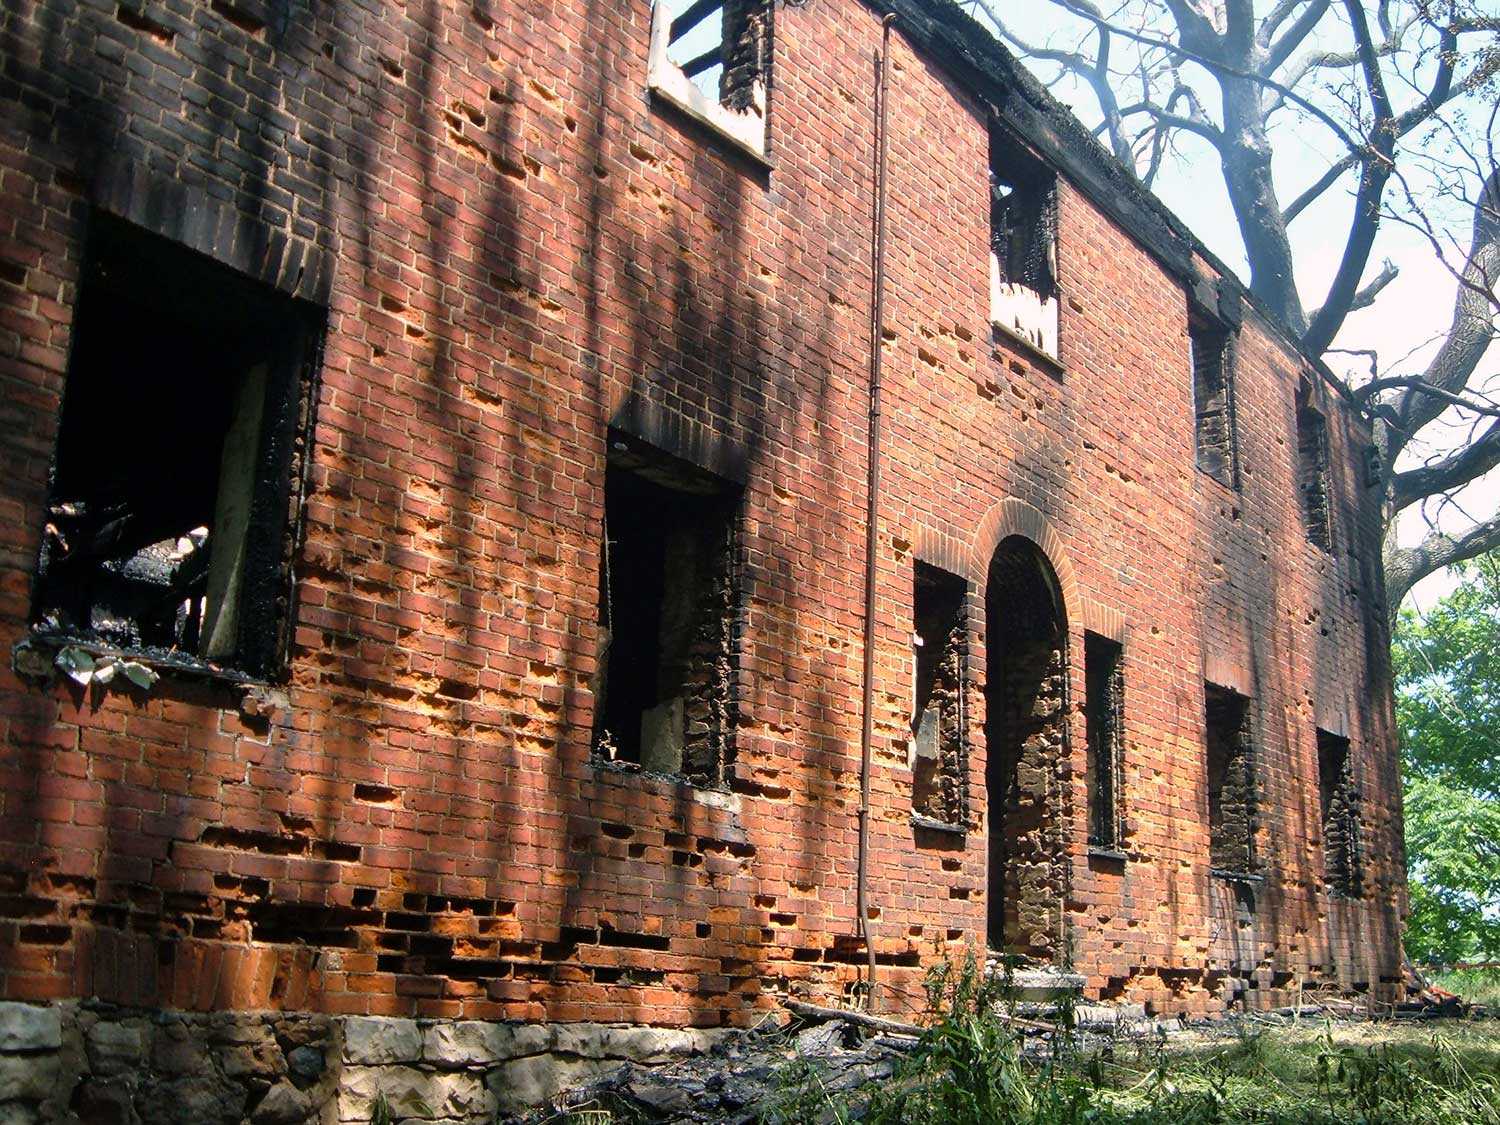 La plus ancienne structure en brique de la ville de Hamilton – la Book House, située à Ancaster, vient d’être l’objet d’un incendie qu’on soupçonne être d’origine criminelle. (Photo : Sharon Vattay, Ville de Hamilton)